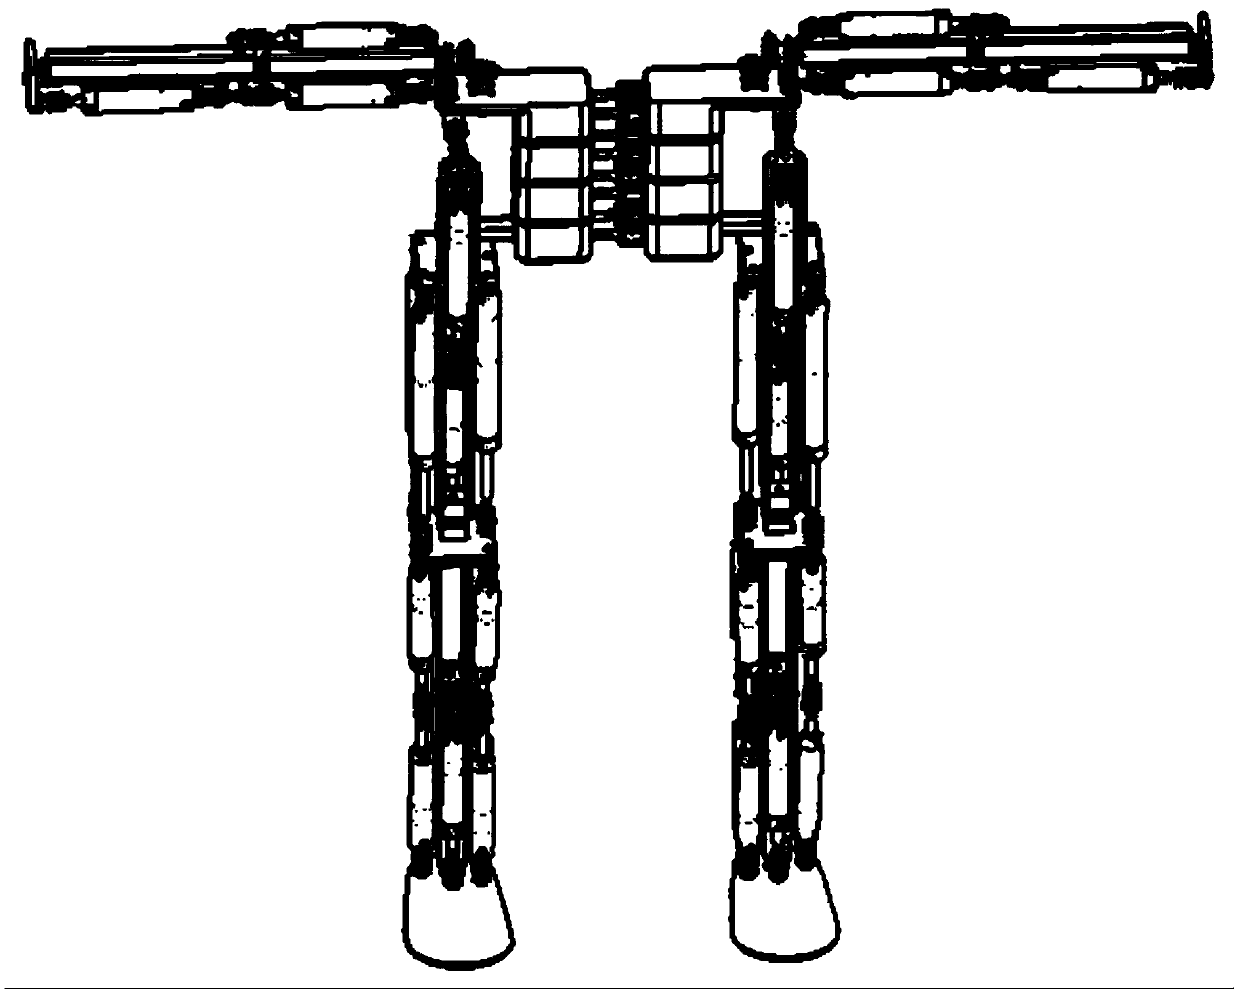 Cylinder-based humanoid robot